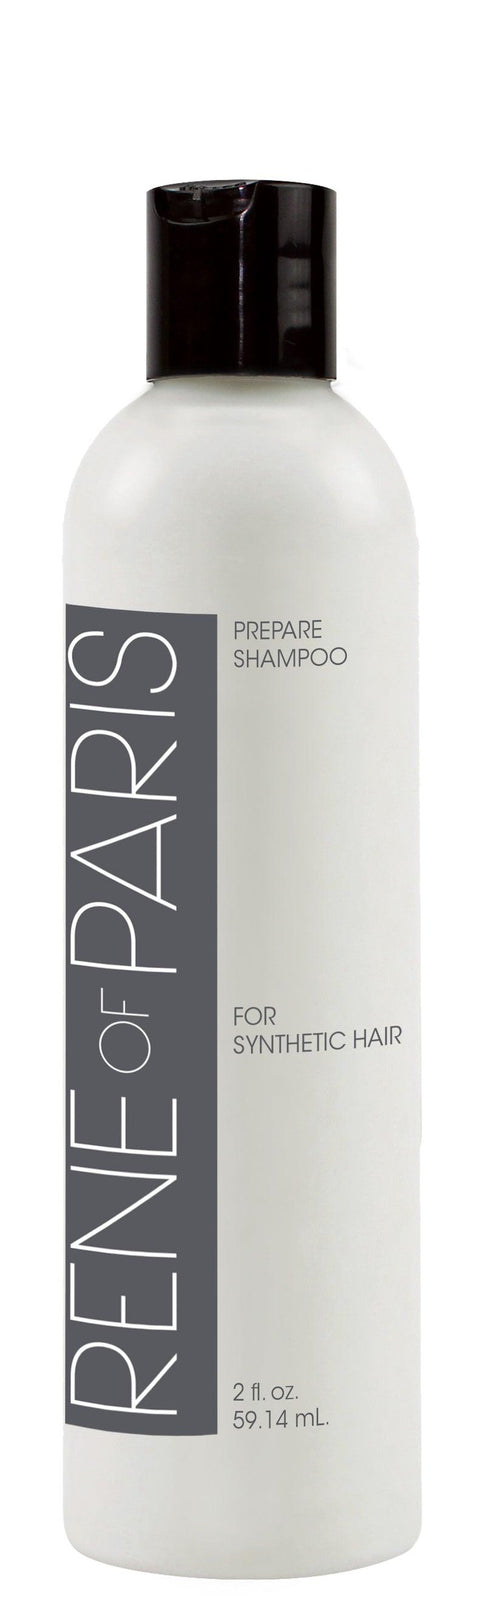 ROP Prepare Shampoo - 2 oz by Rene of Paris - Ultimate Looks